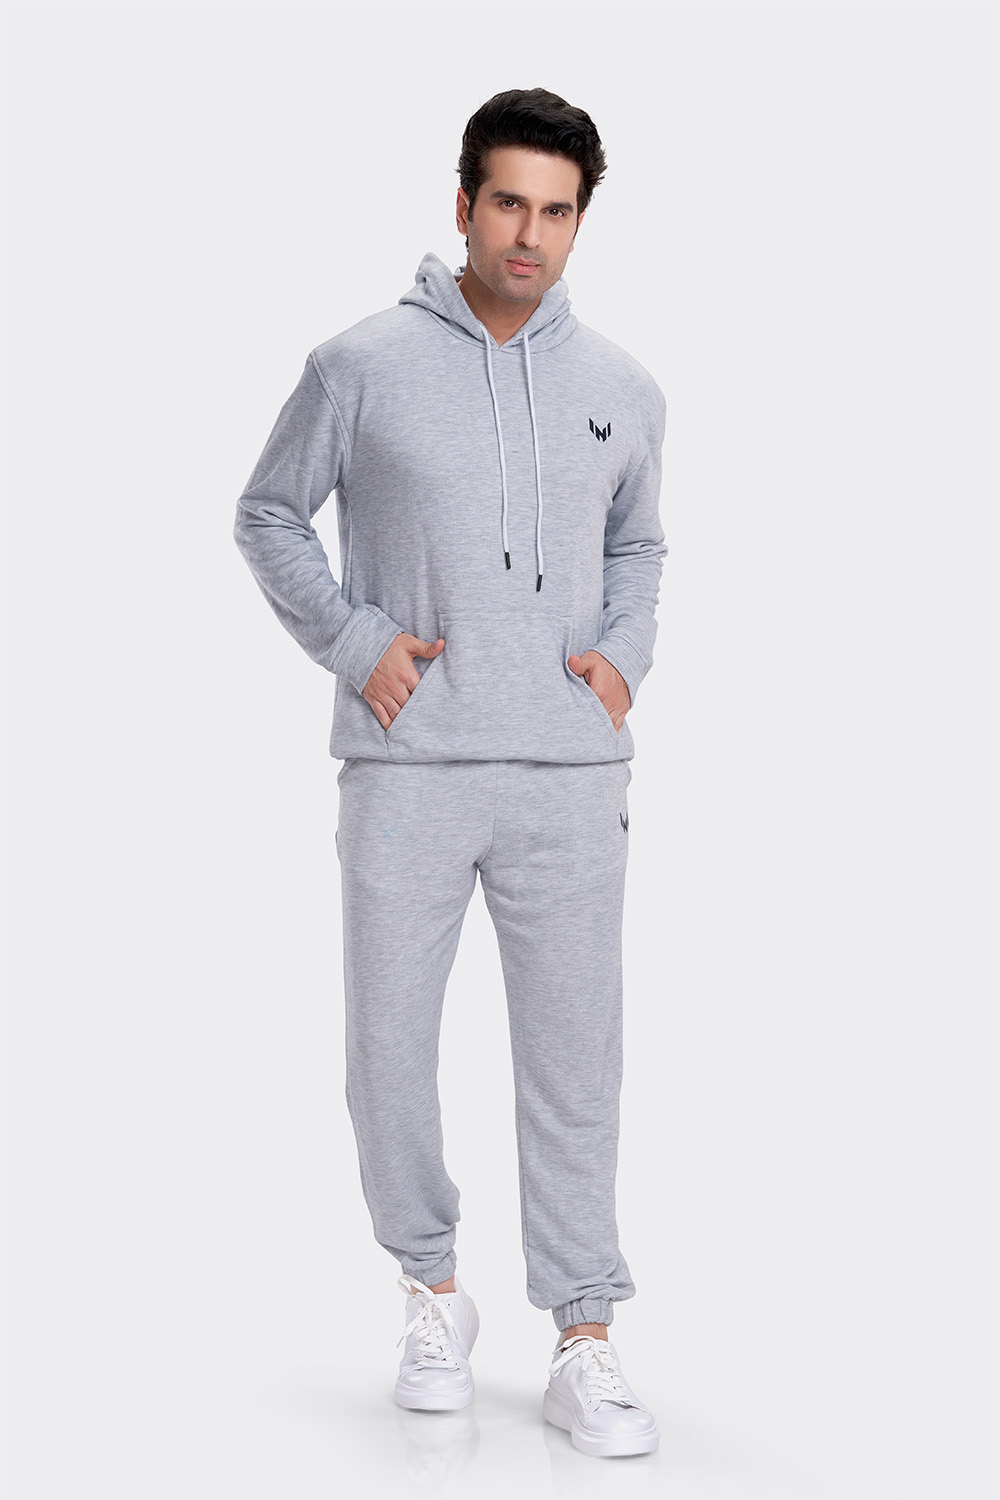 tøffel hulkende ekskrementer Hoodie T Shirt & Jogger Pants full set - Grey - Nachke Dance fashion